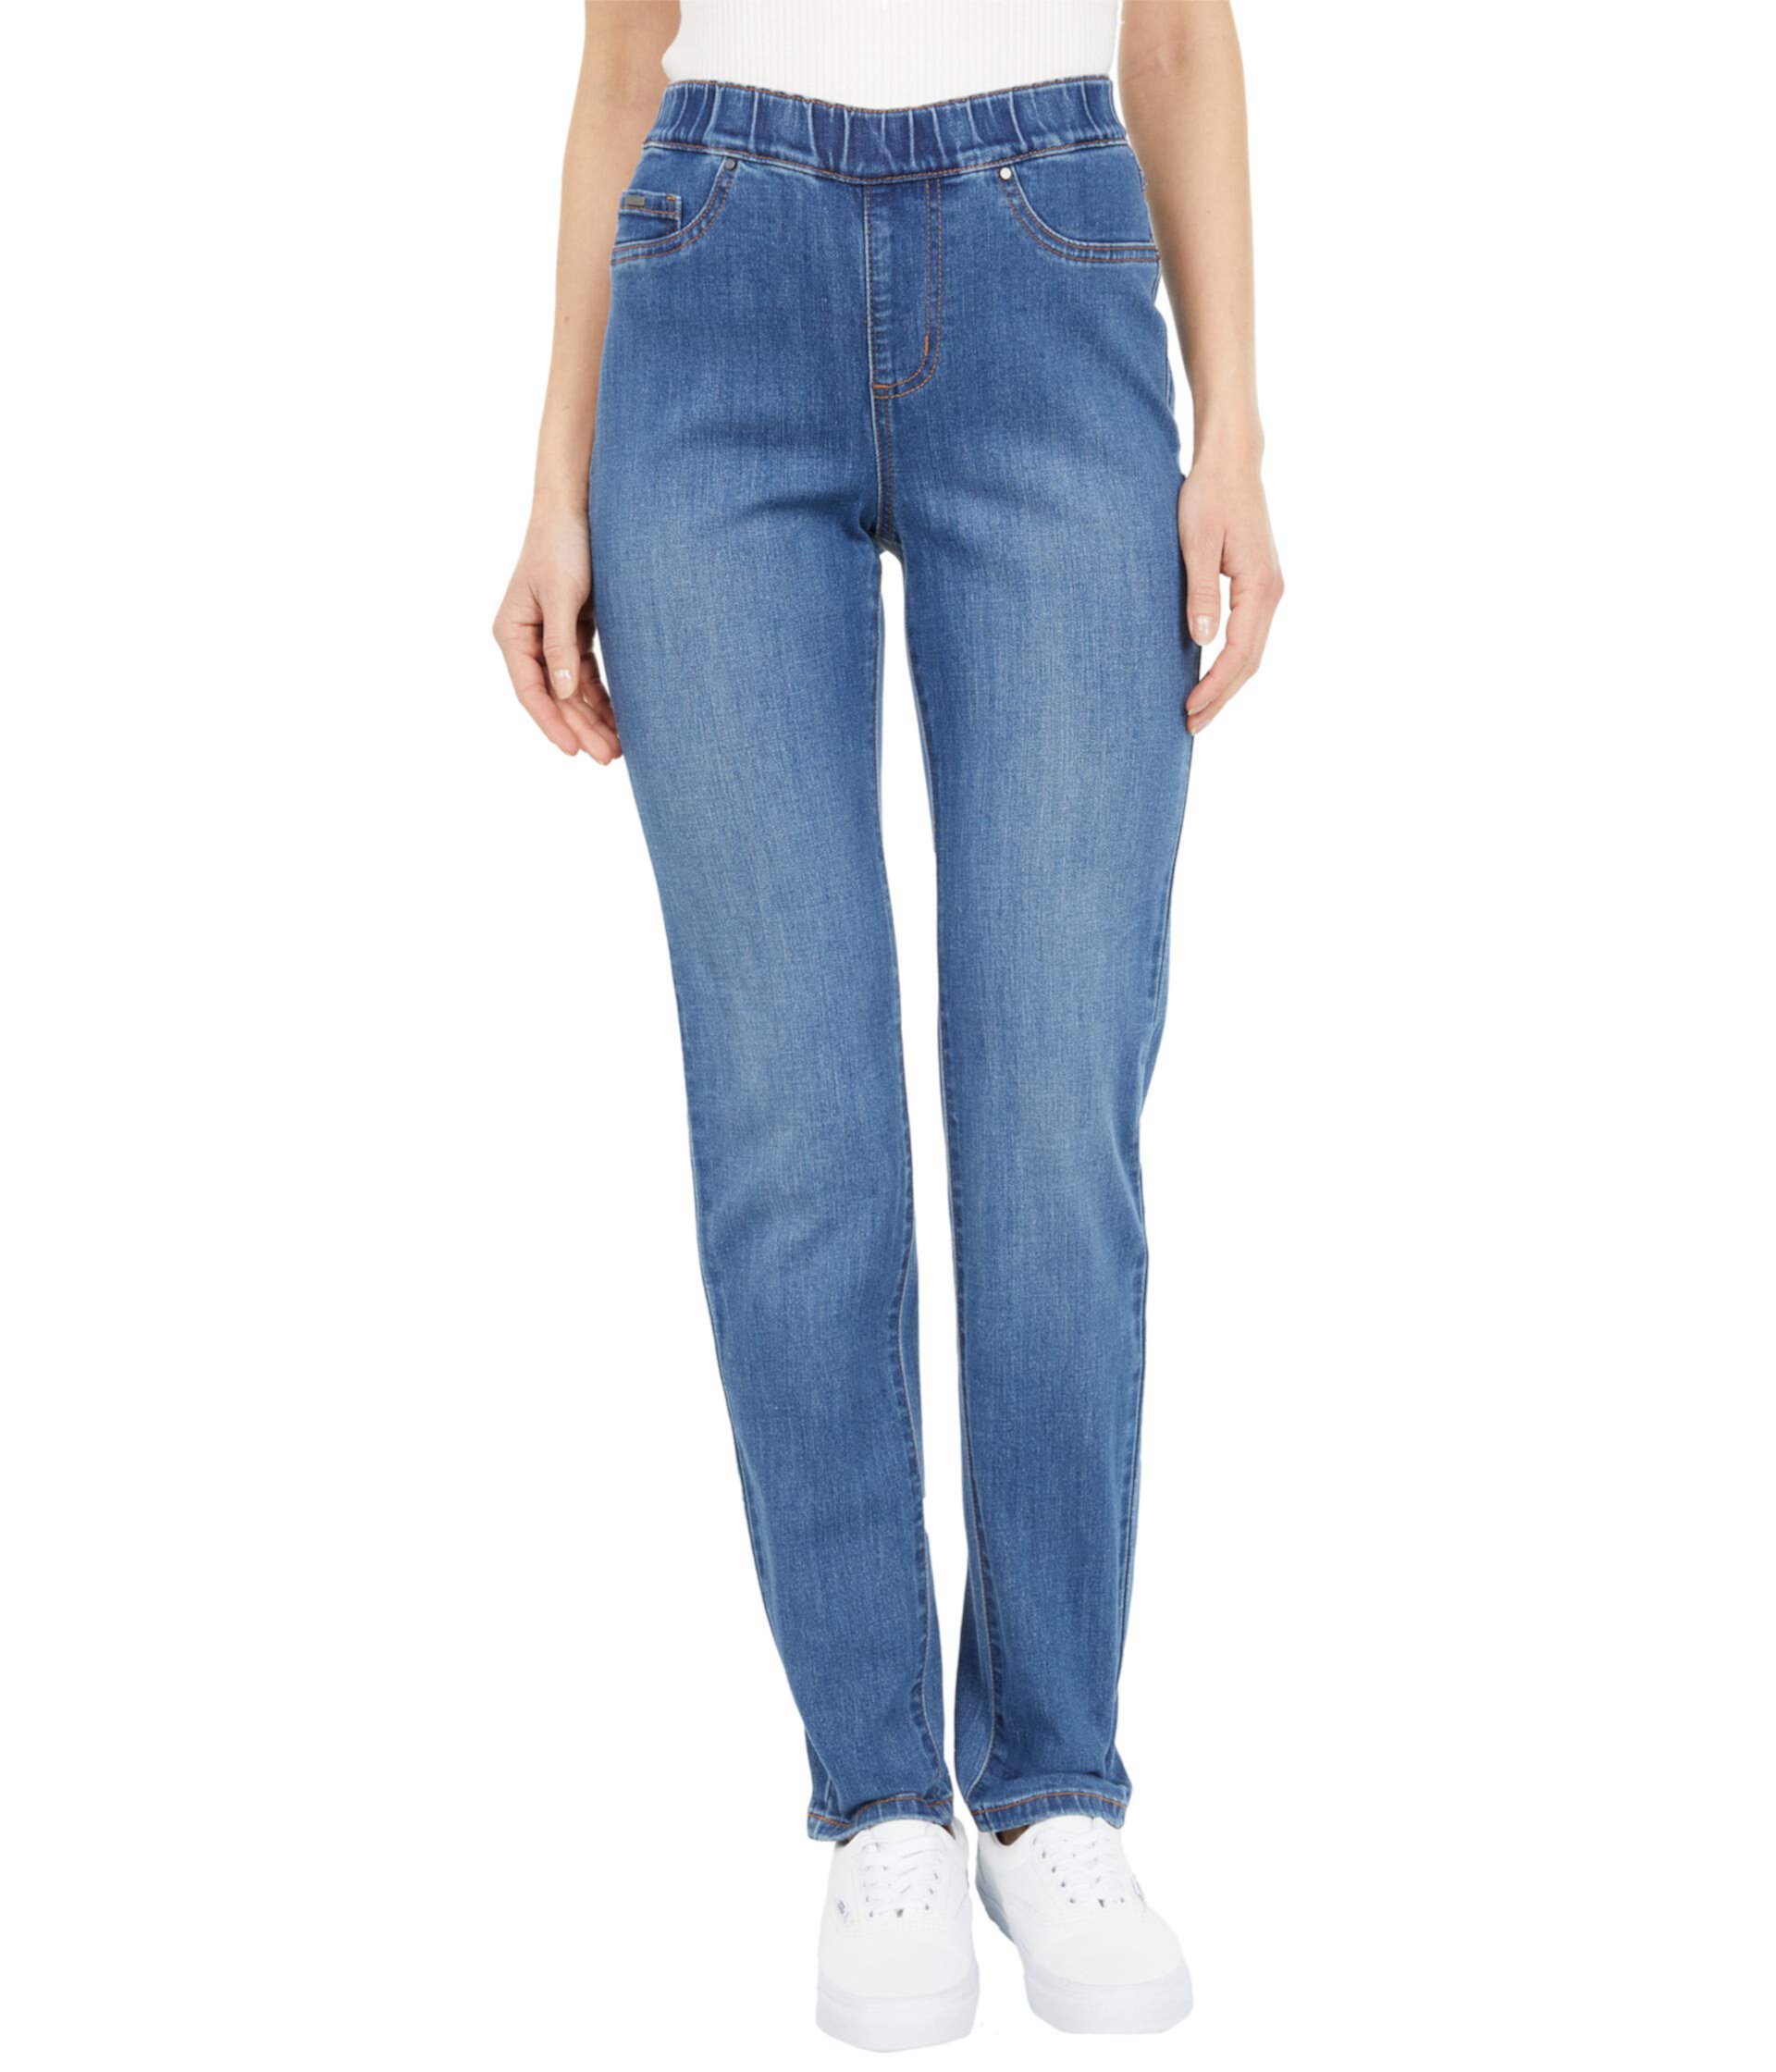 Джинсовые узкие джеггинсы без застежки Renew в цвете индиго FDJ French Dressing Jeans